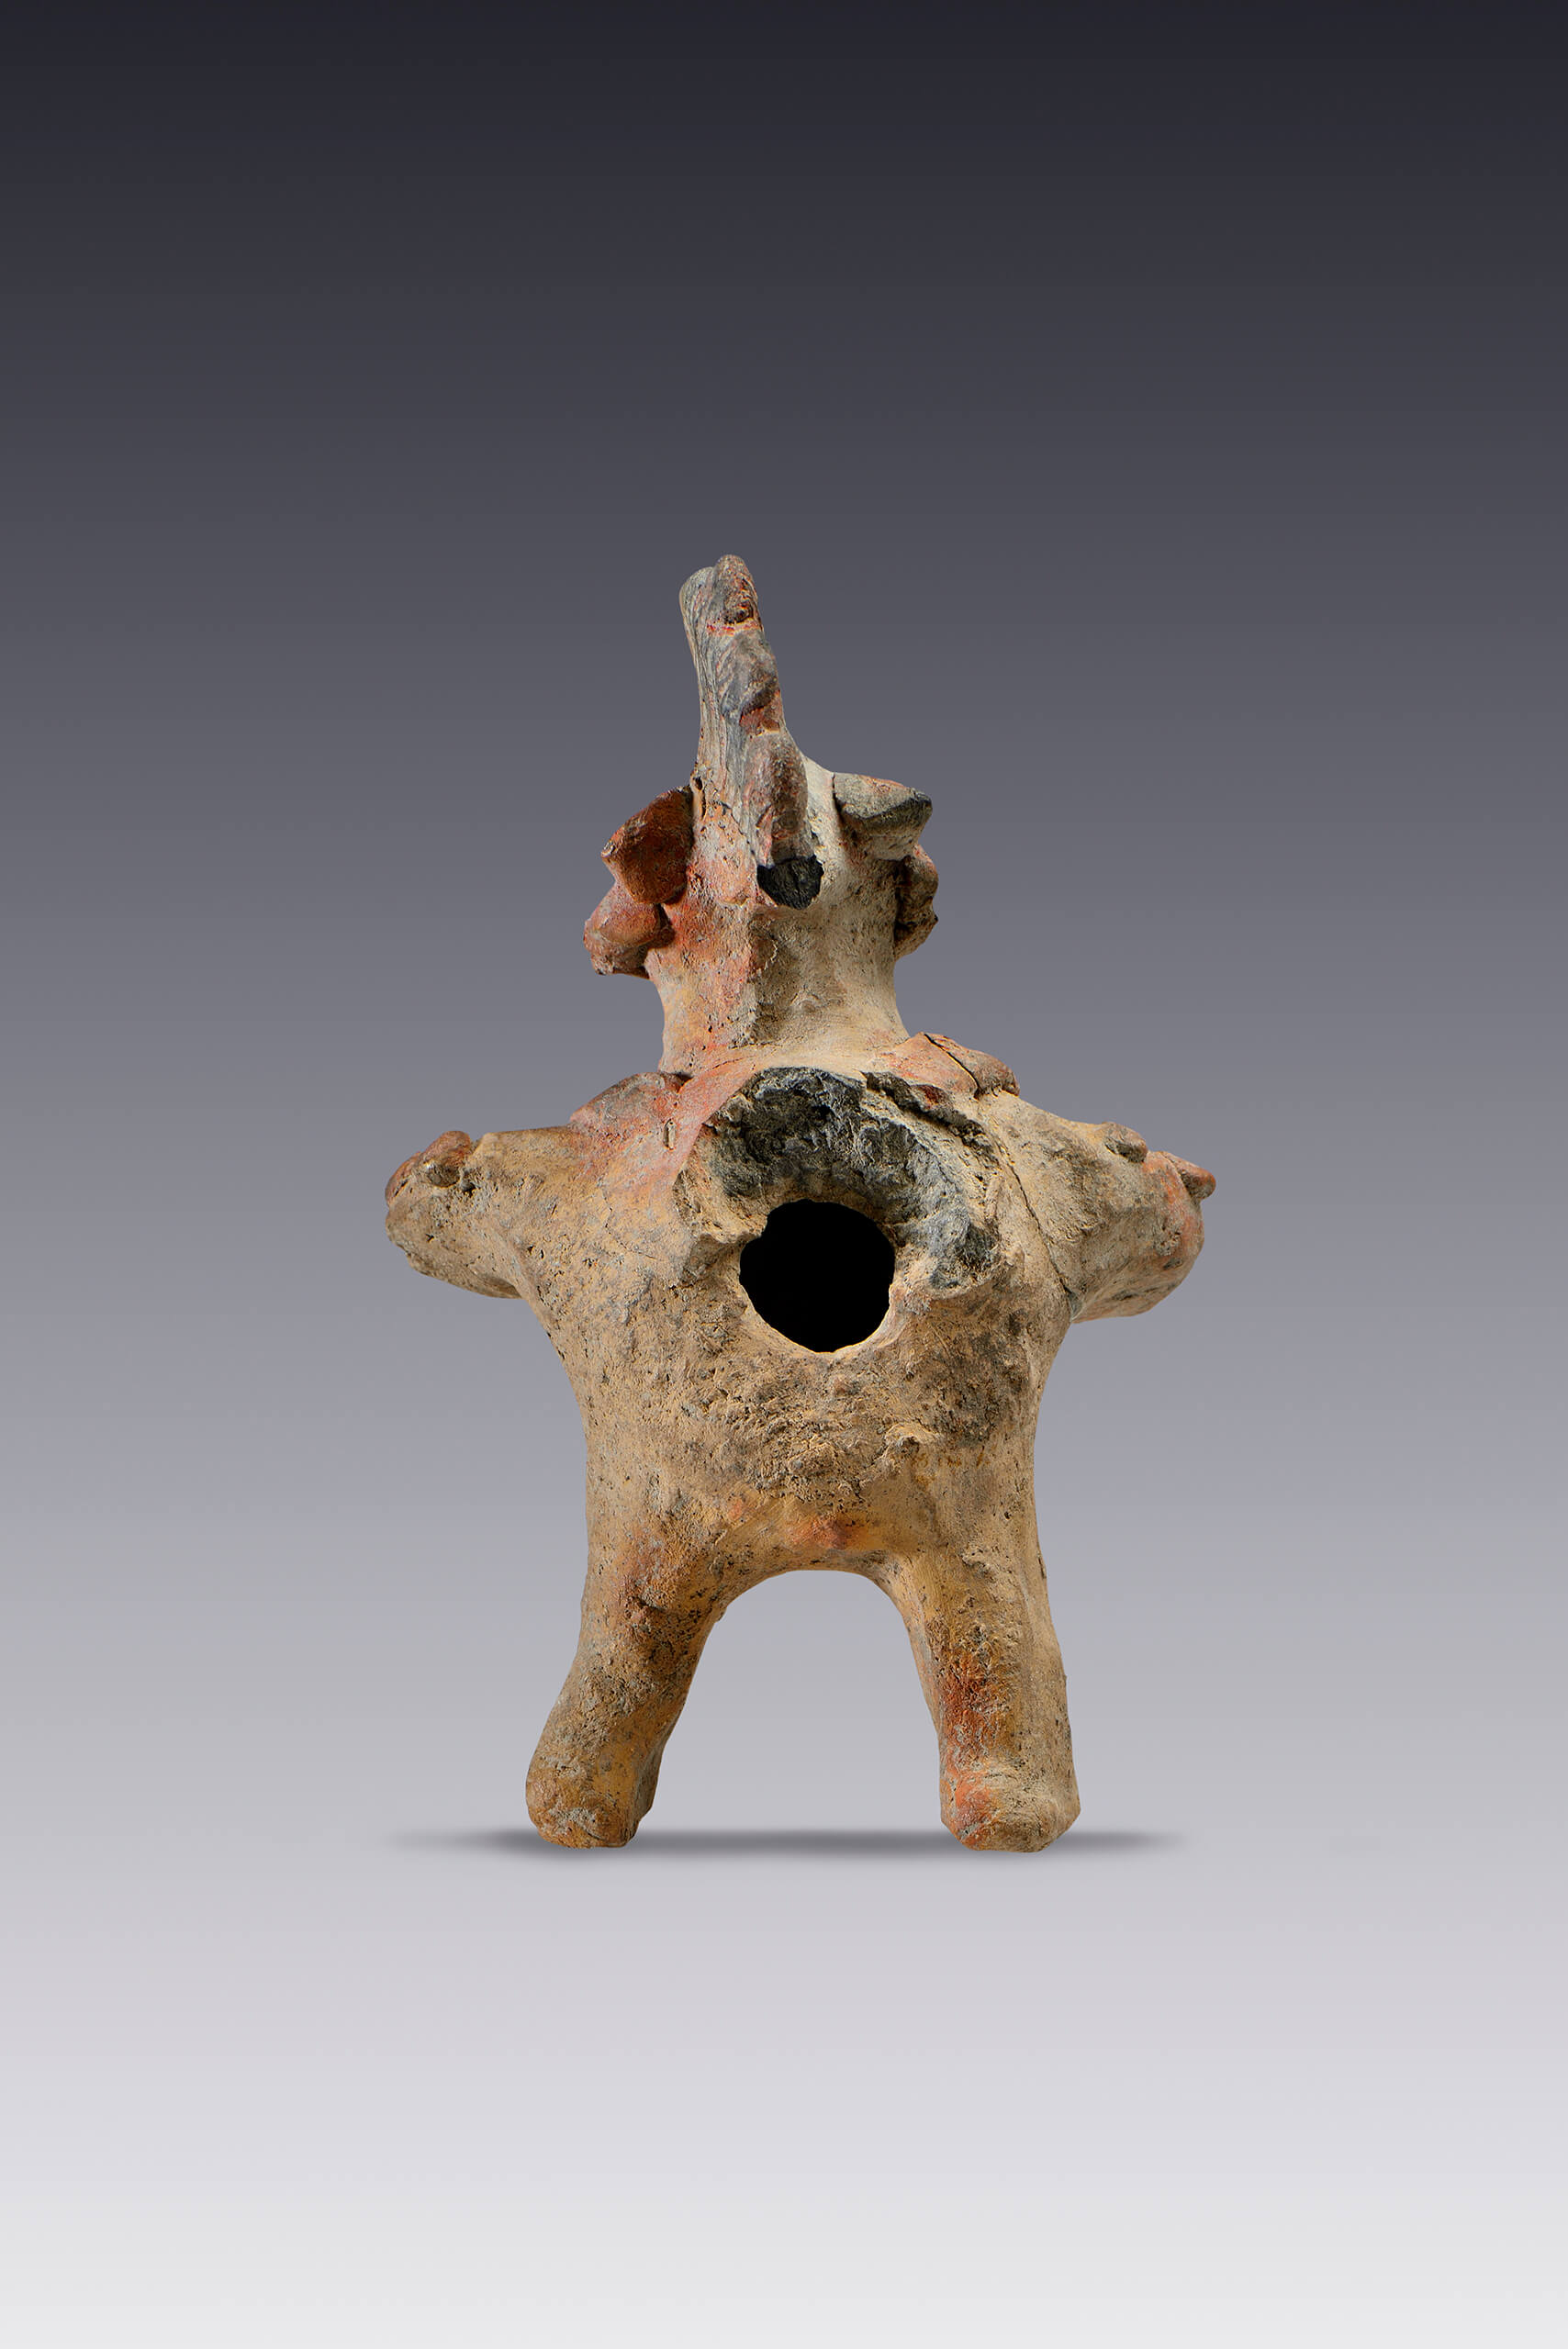 Silbato con personaje antropomorfo que porta un tocado | El México antiguo. Salas de Arte Prehispánico | Museo Amparo, Puebla